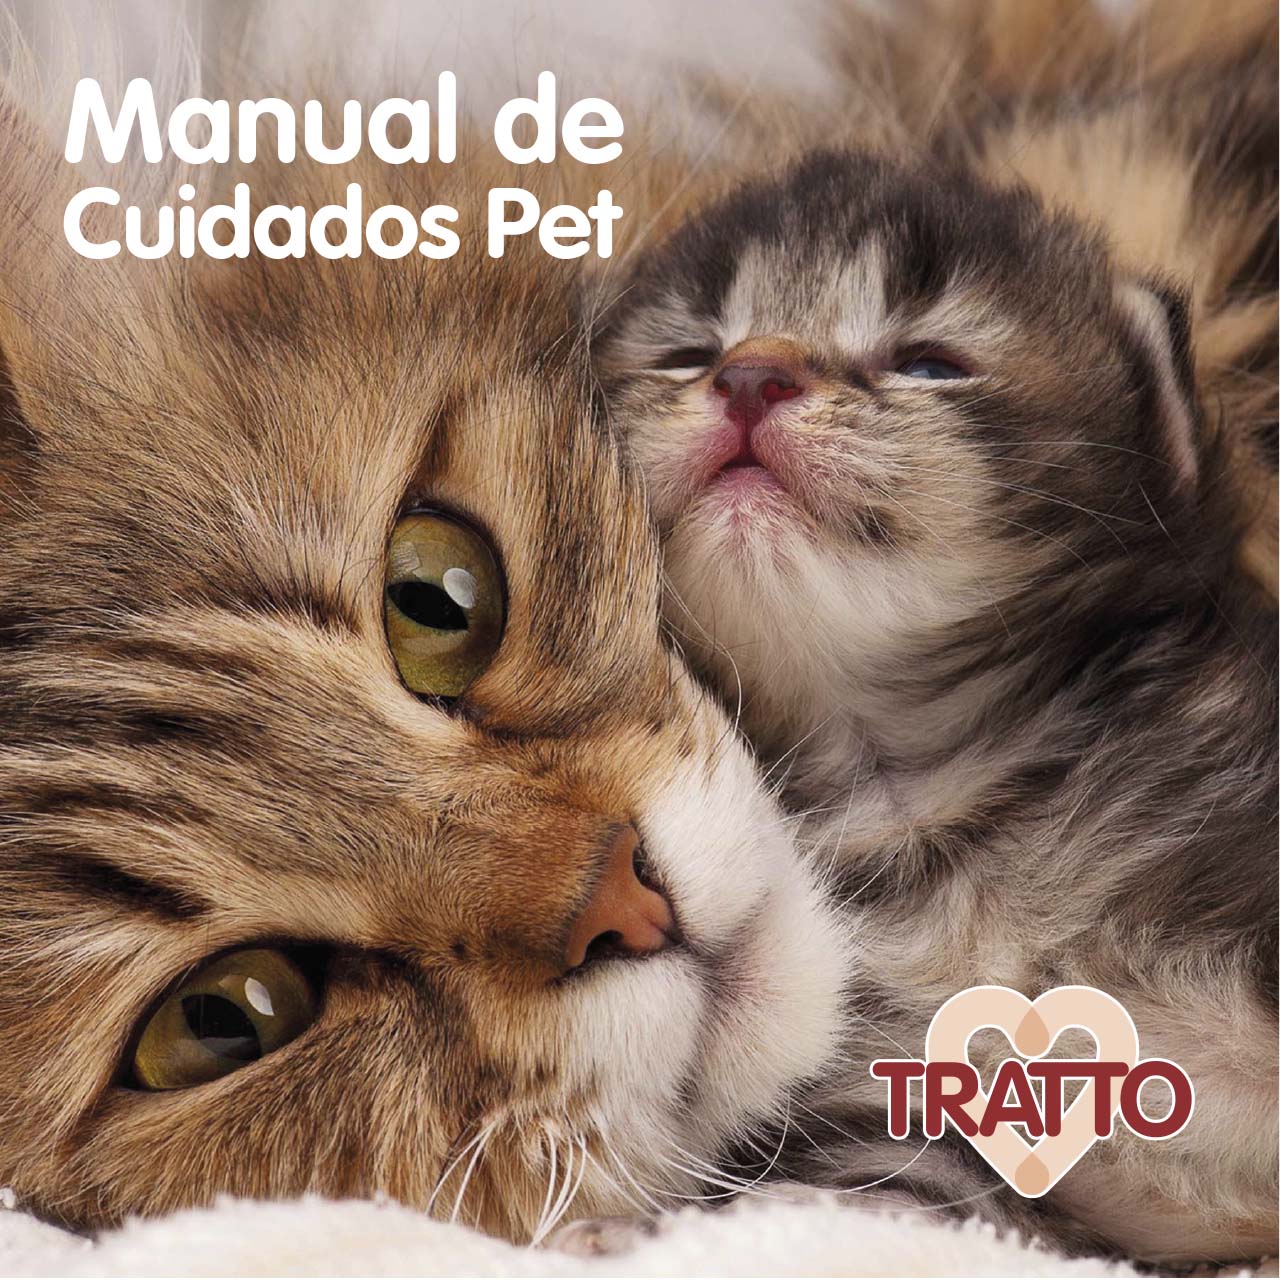 Manual de Cuidados Pet